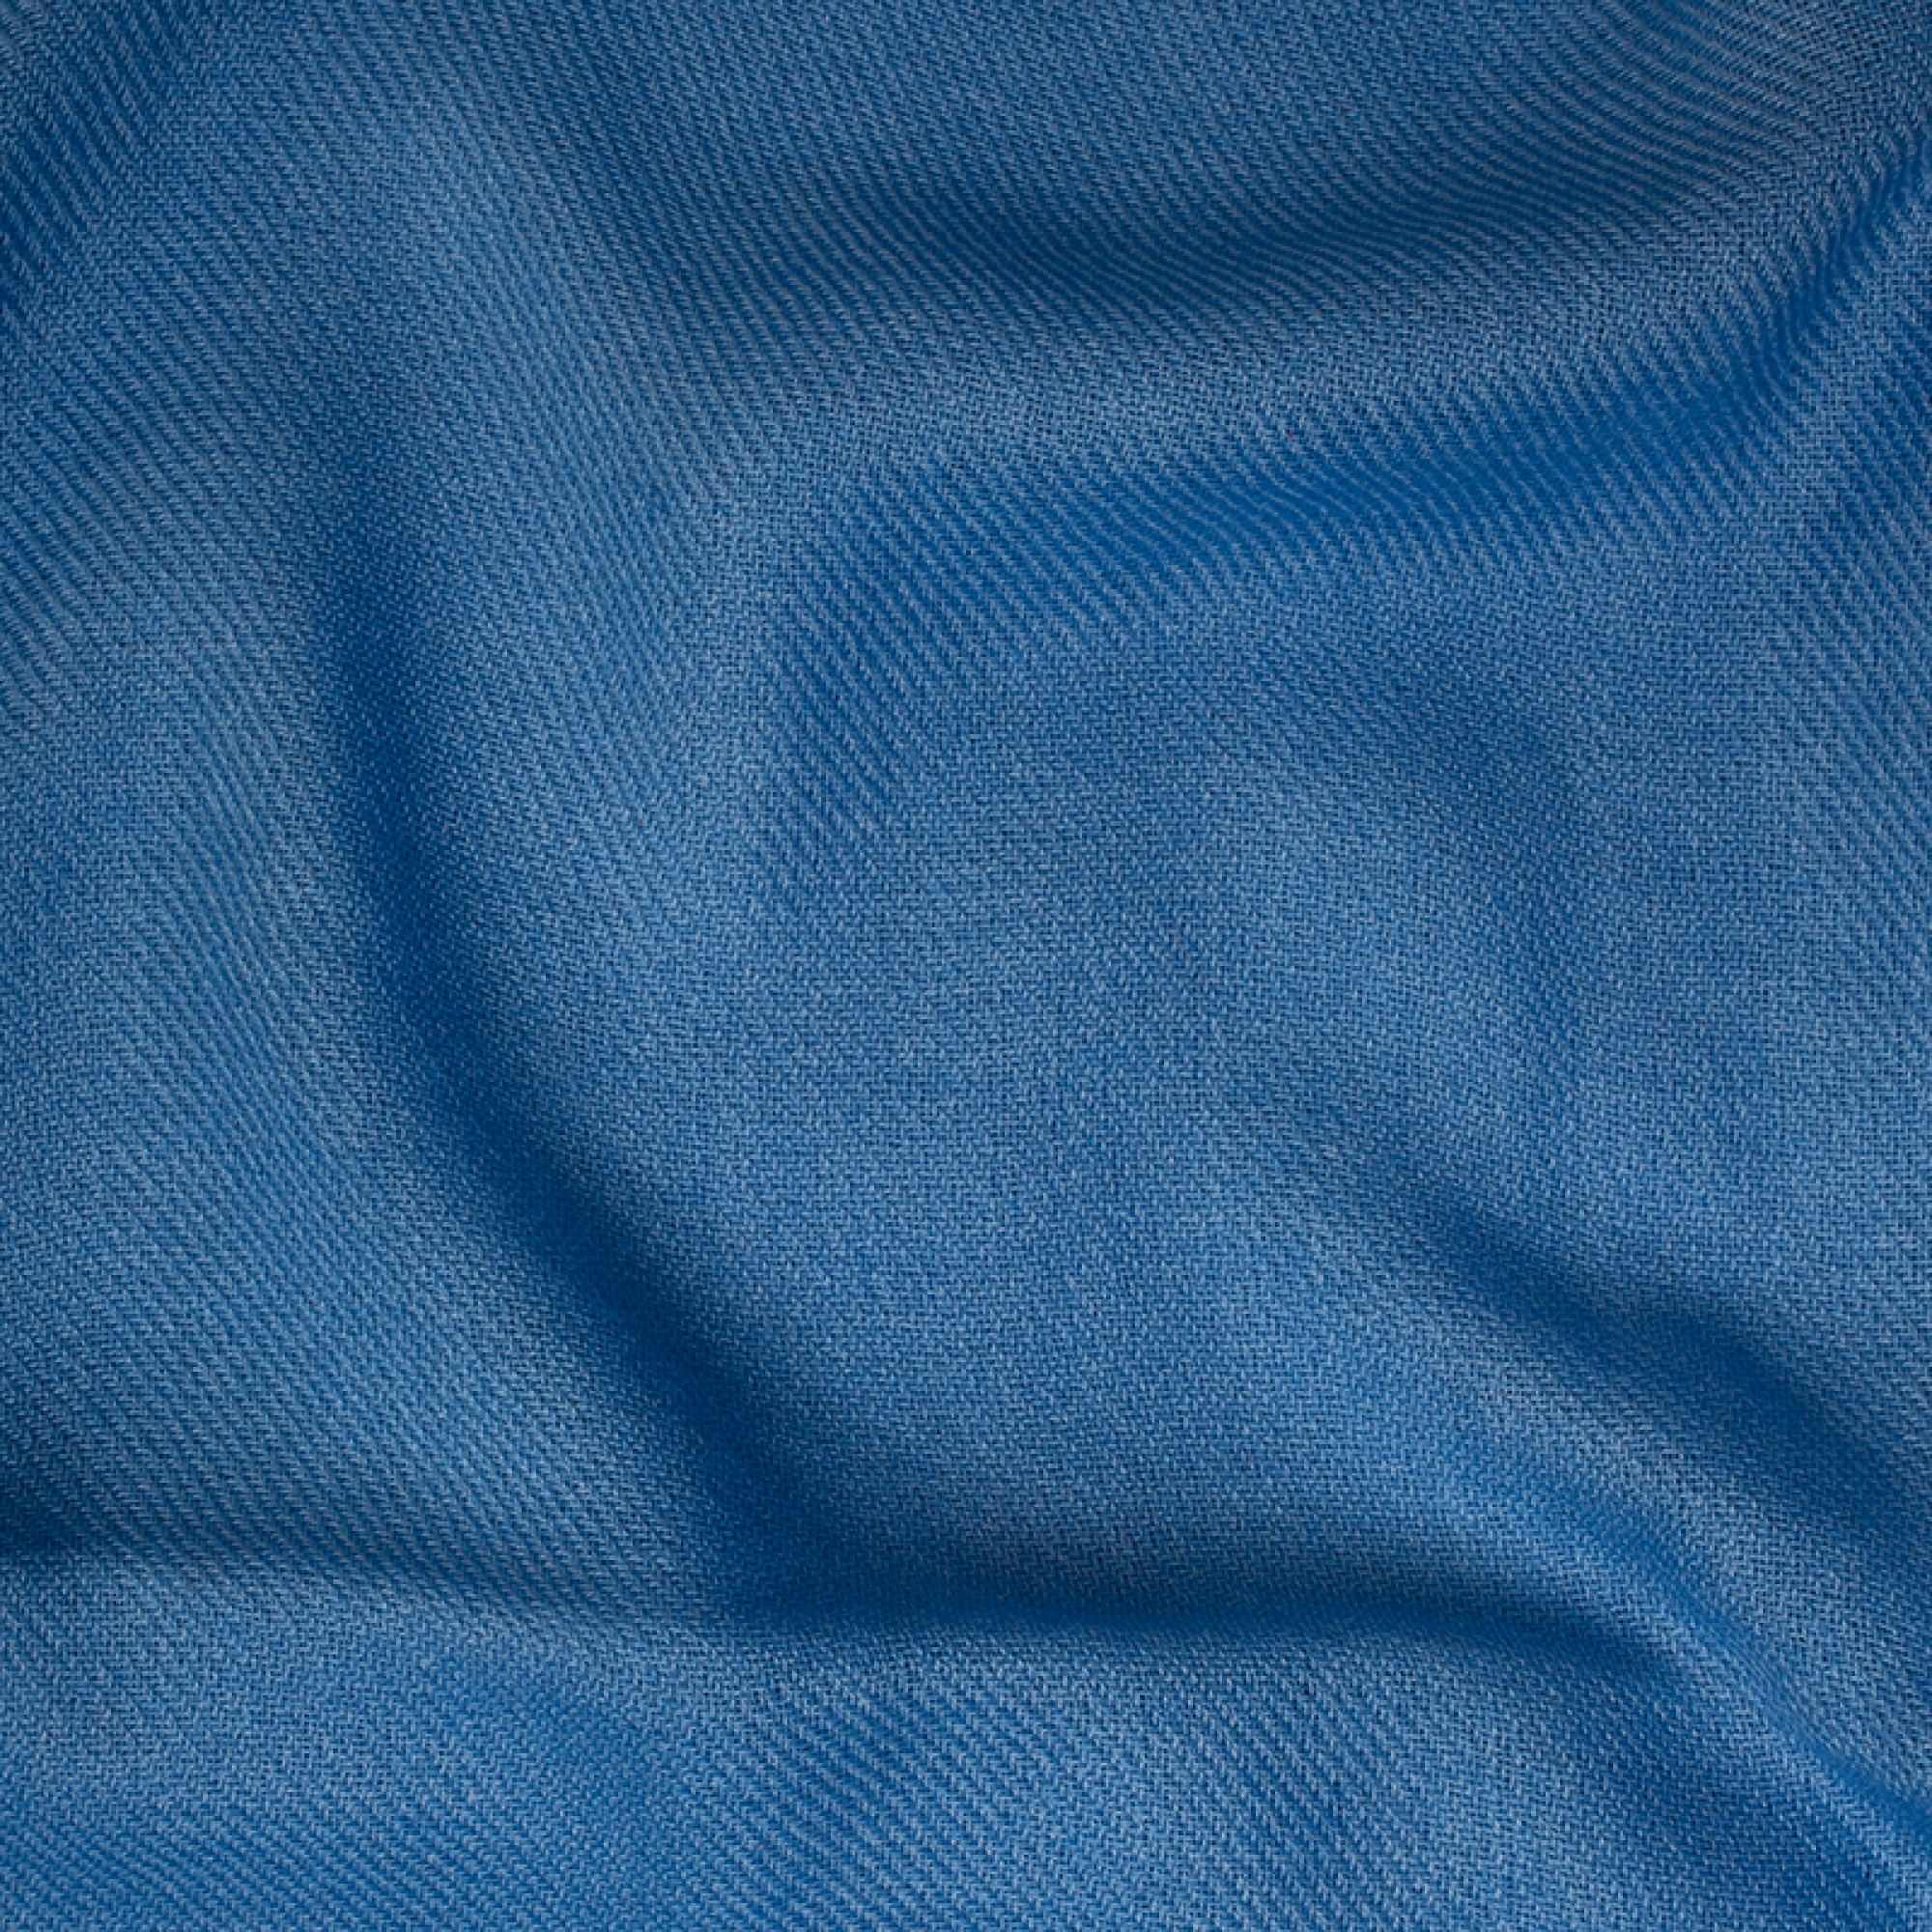 Cashmere accessoires neu toodoo plain xl 240 x 260 miro blau 240 x 260 cm